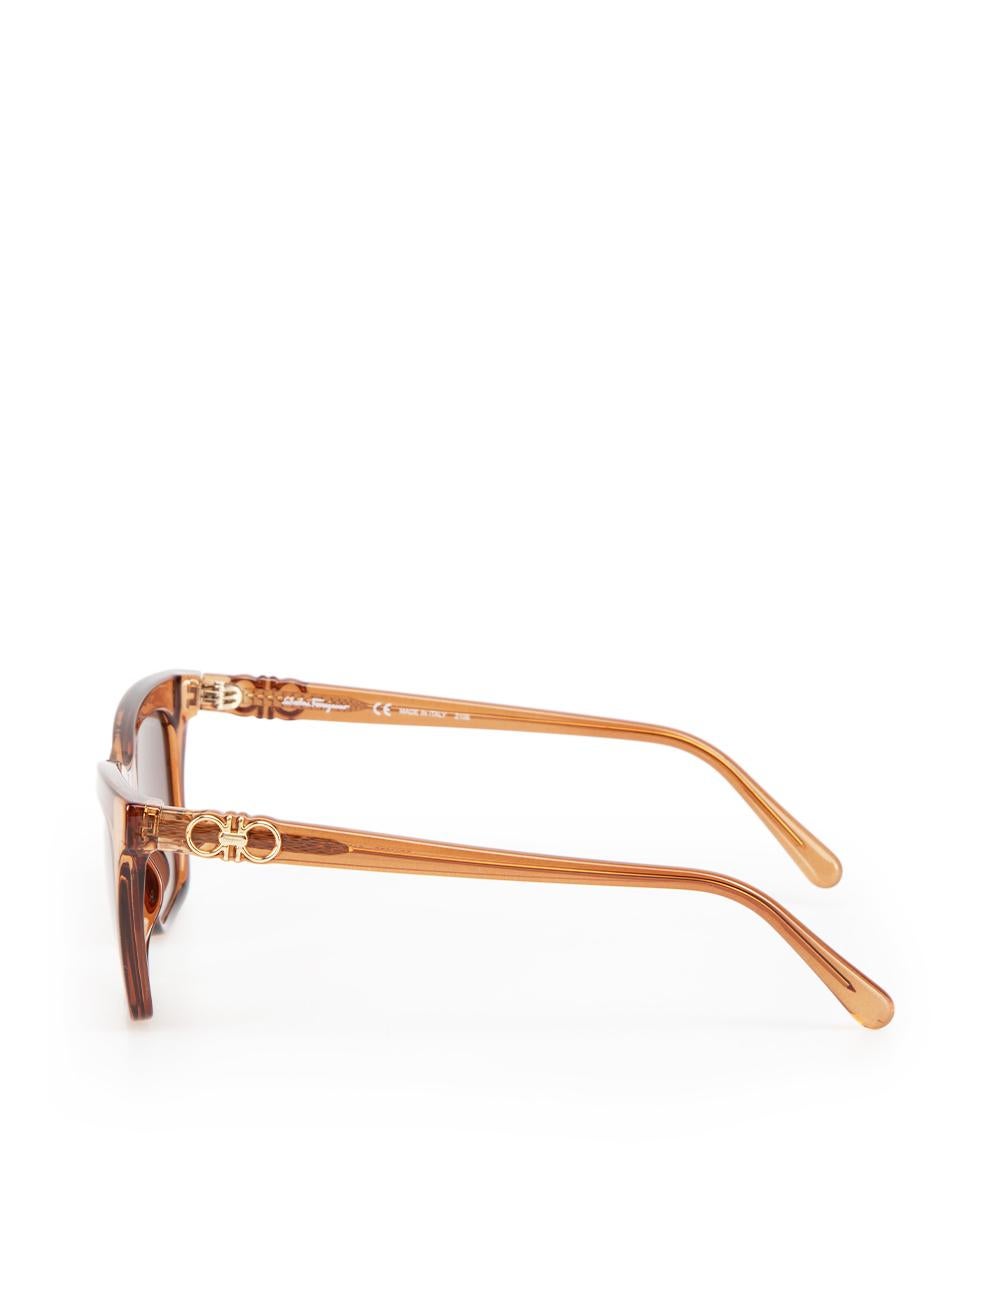 Salvatore Ferragamo Brown Gradient Rectangle Sunglasses For Sale 1